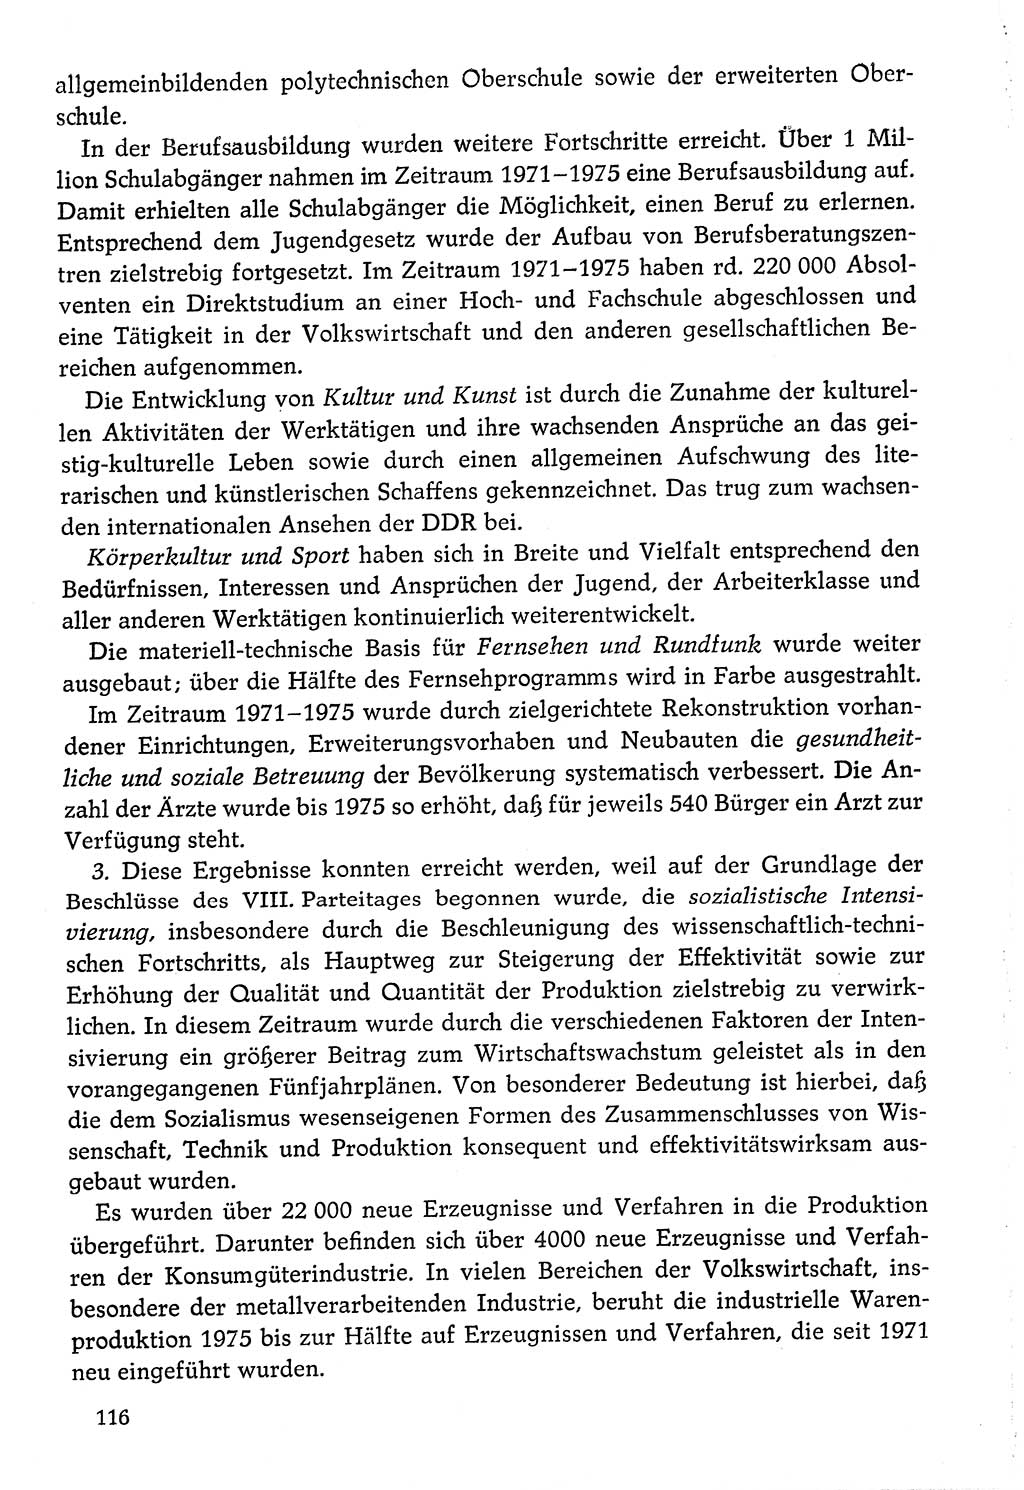 Dokumente der Sozialistischen Einheitspartei Deutschlands (SED) [Deutsche Demokratische Republik (DDR)] 1976-1977, Seite 116 (Dok. SED DDR 1976-1977, S. 116)